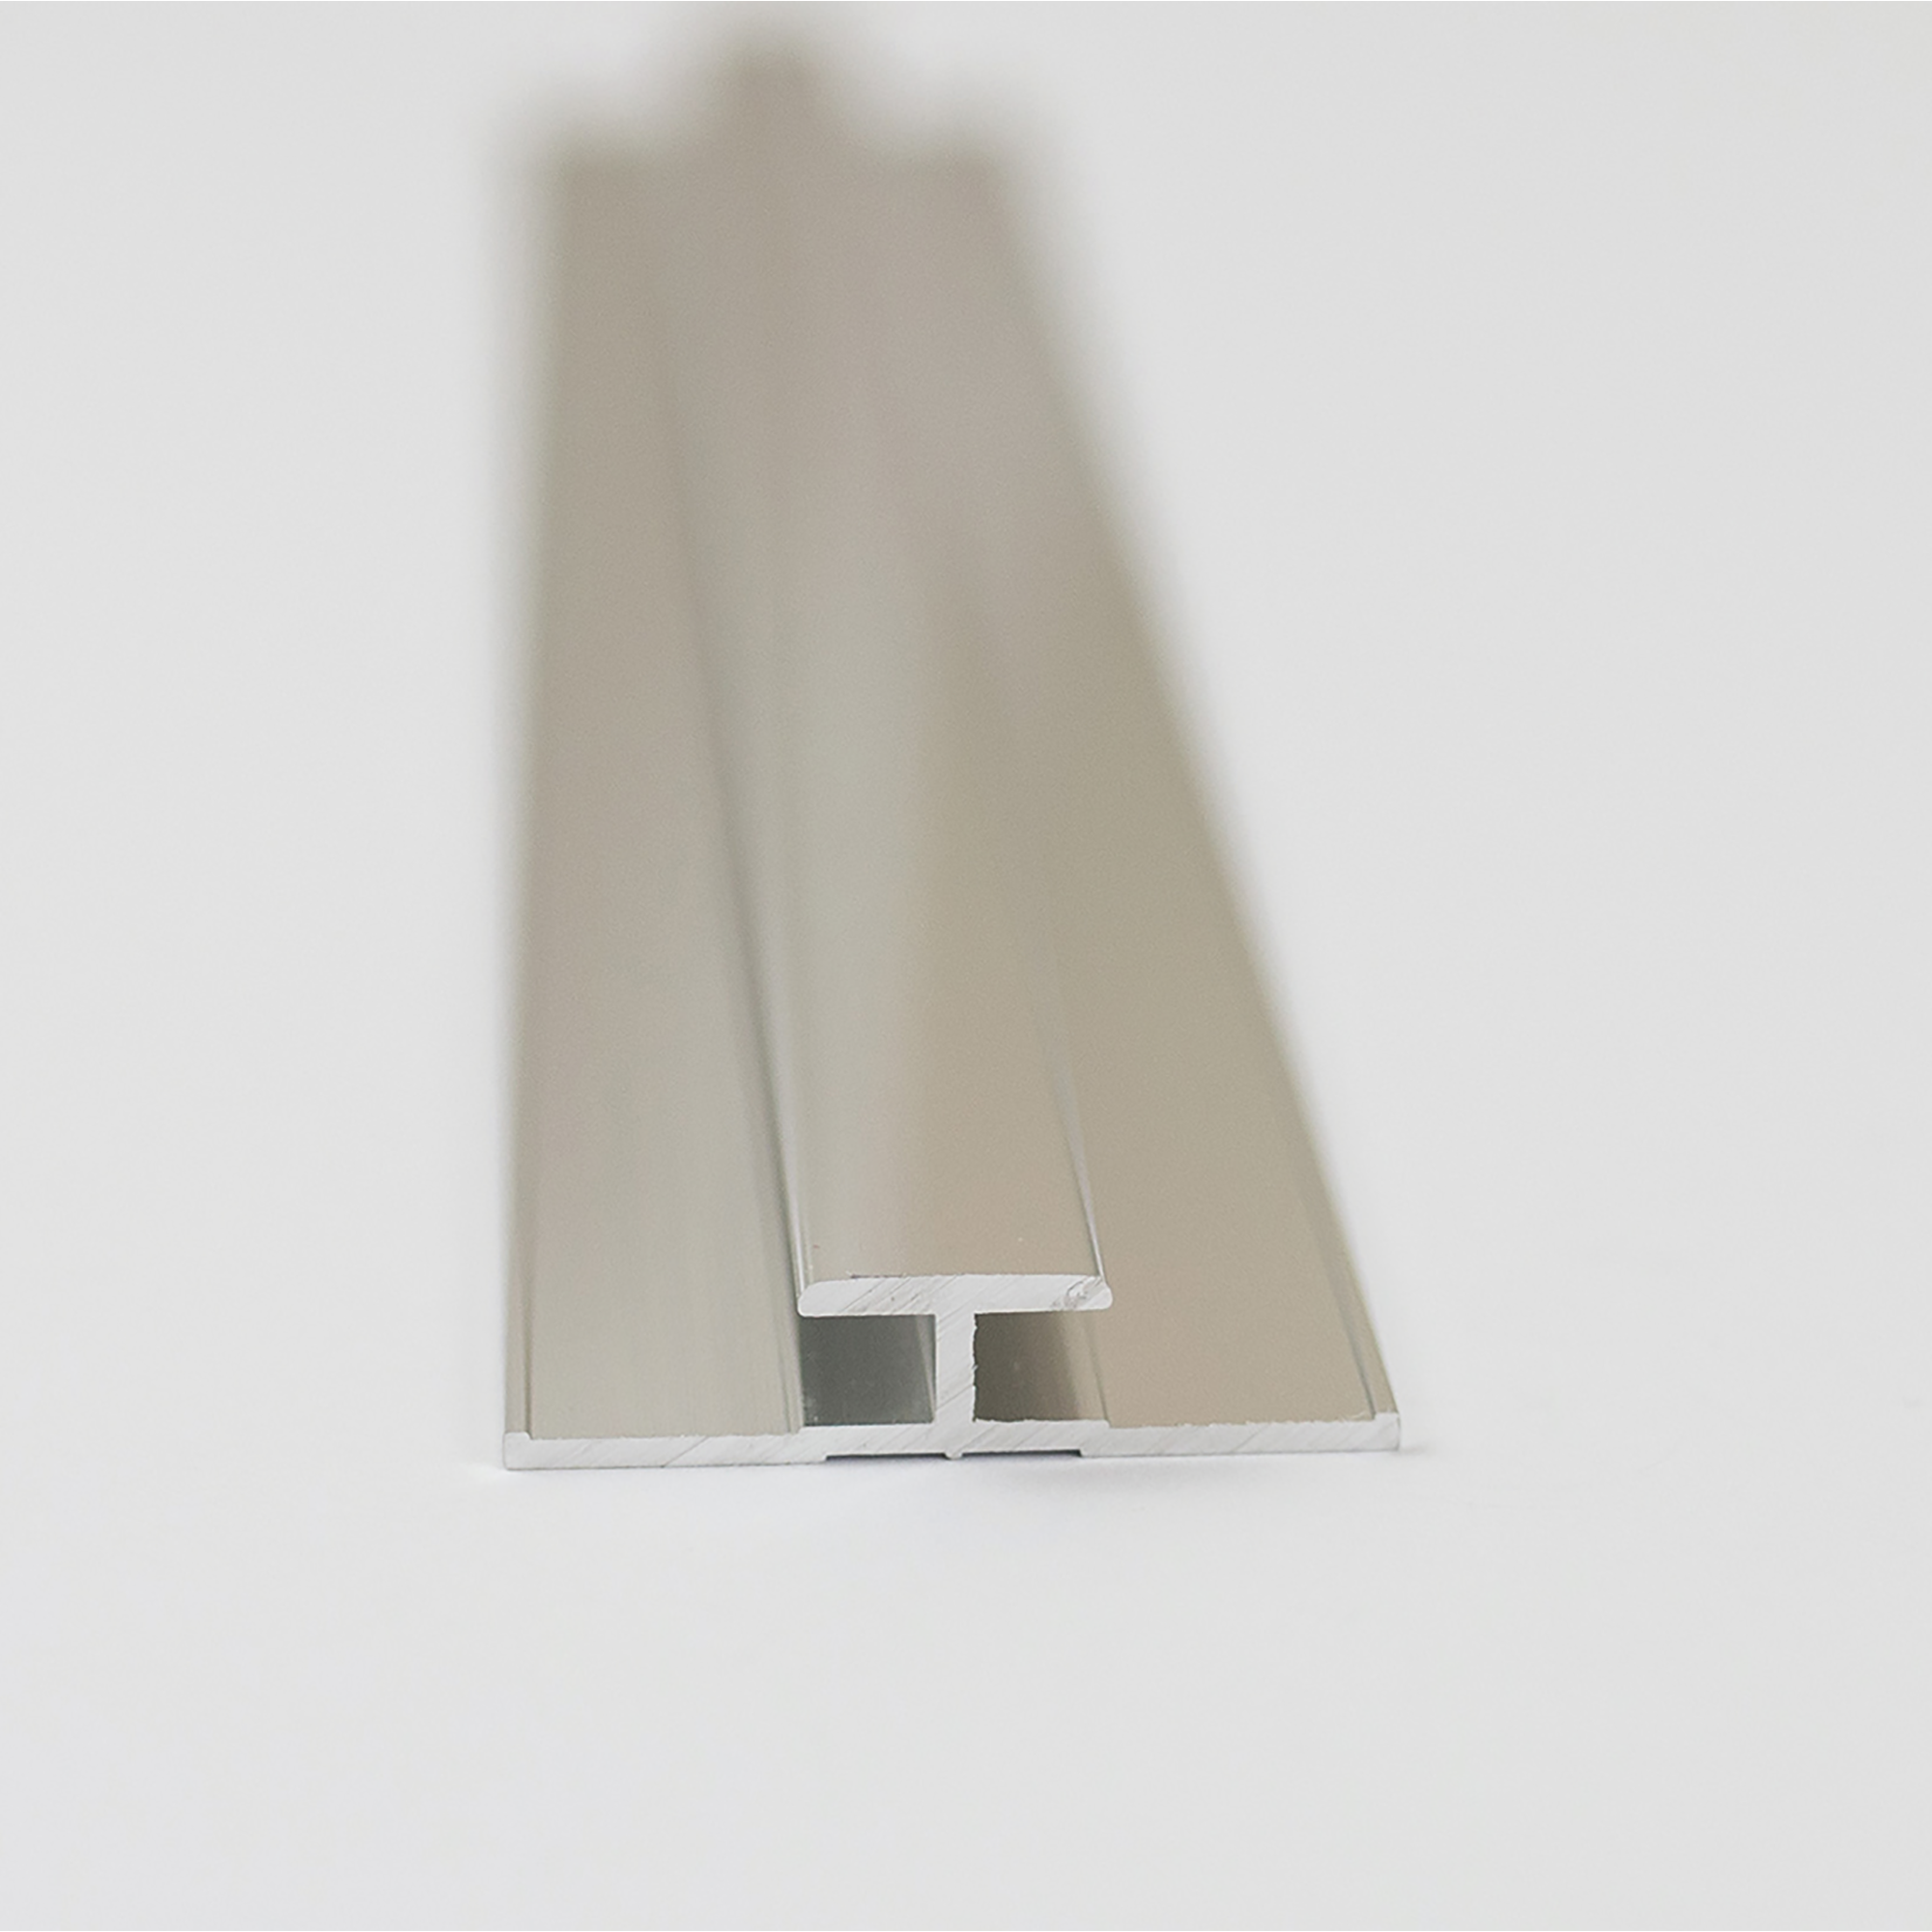 Verbindungsprofil für Rückwandplatten, alu chromeffekt, 2100 mm + product picture